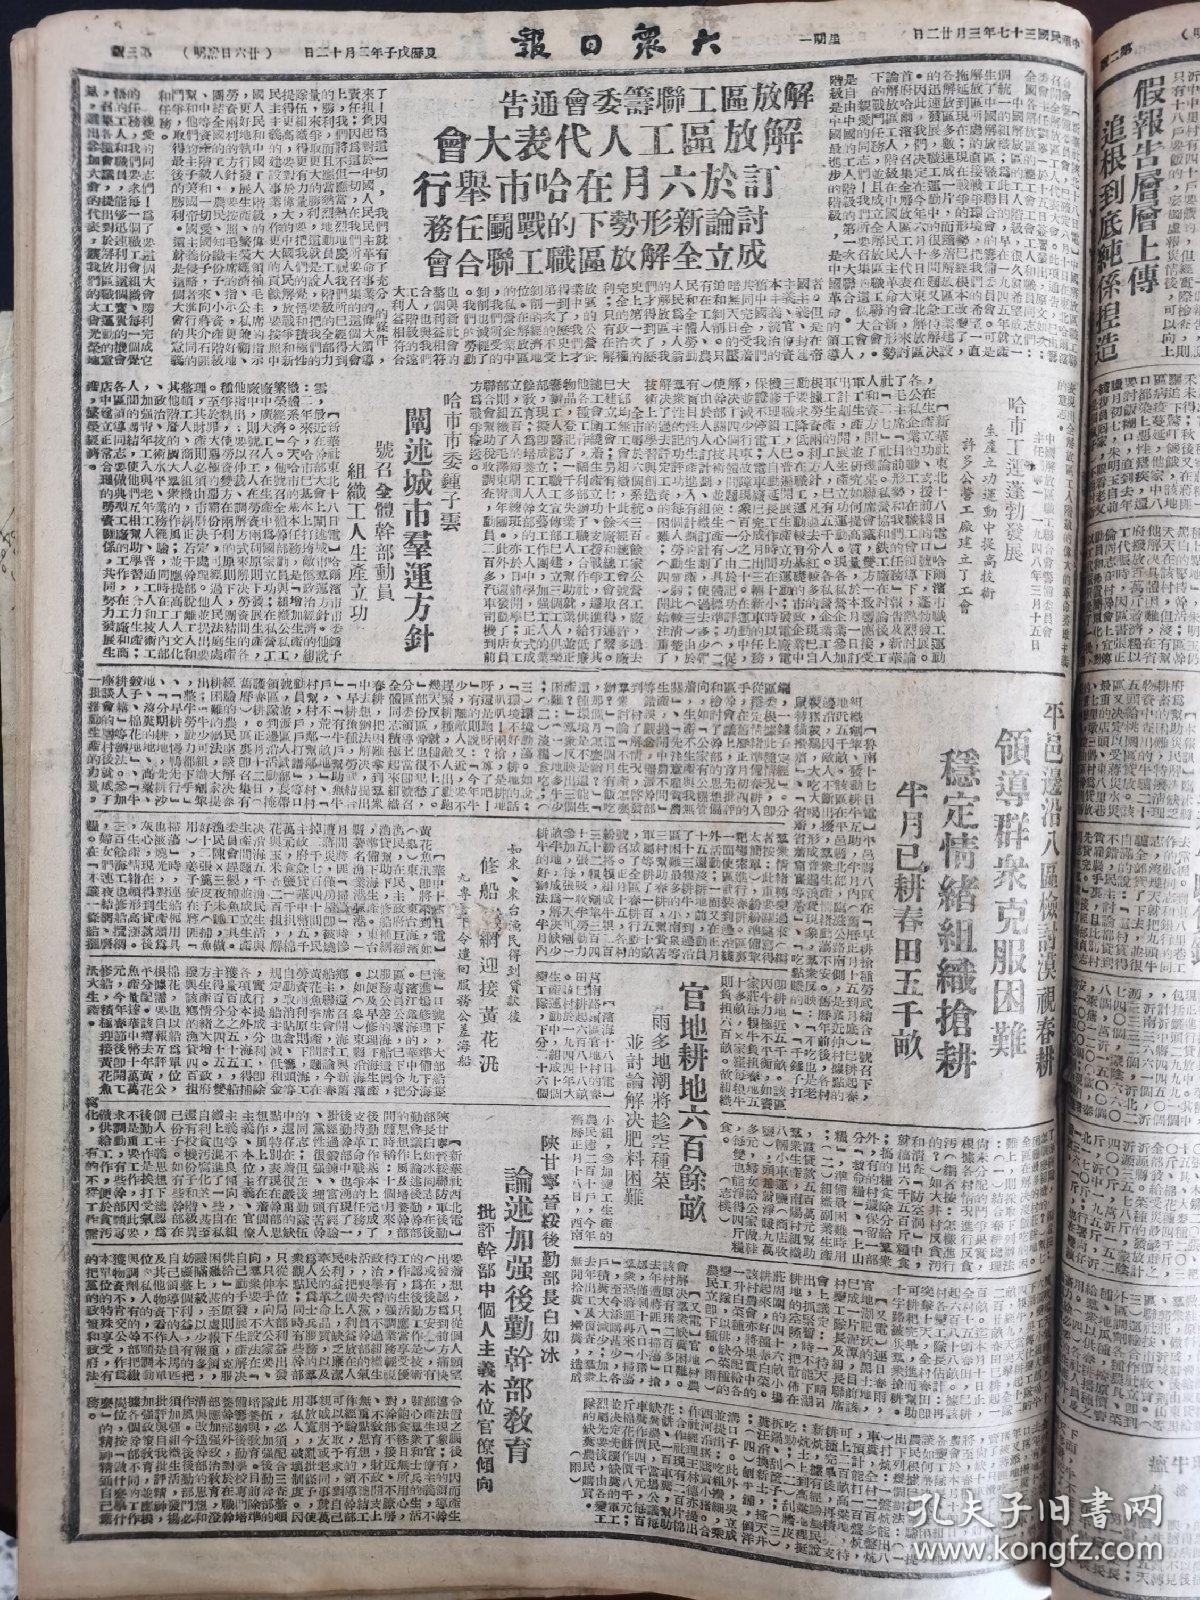 大众日报1948年3月22日，苏北我军收复阜宁，苏中攻克掘石港，洛阳大捷的战略意义，陈赓大将接见